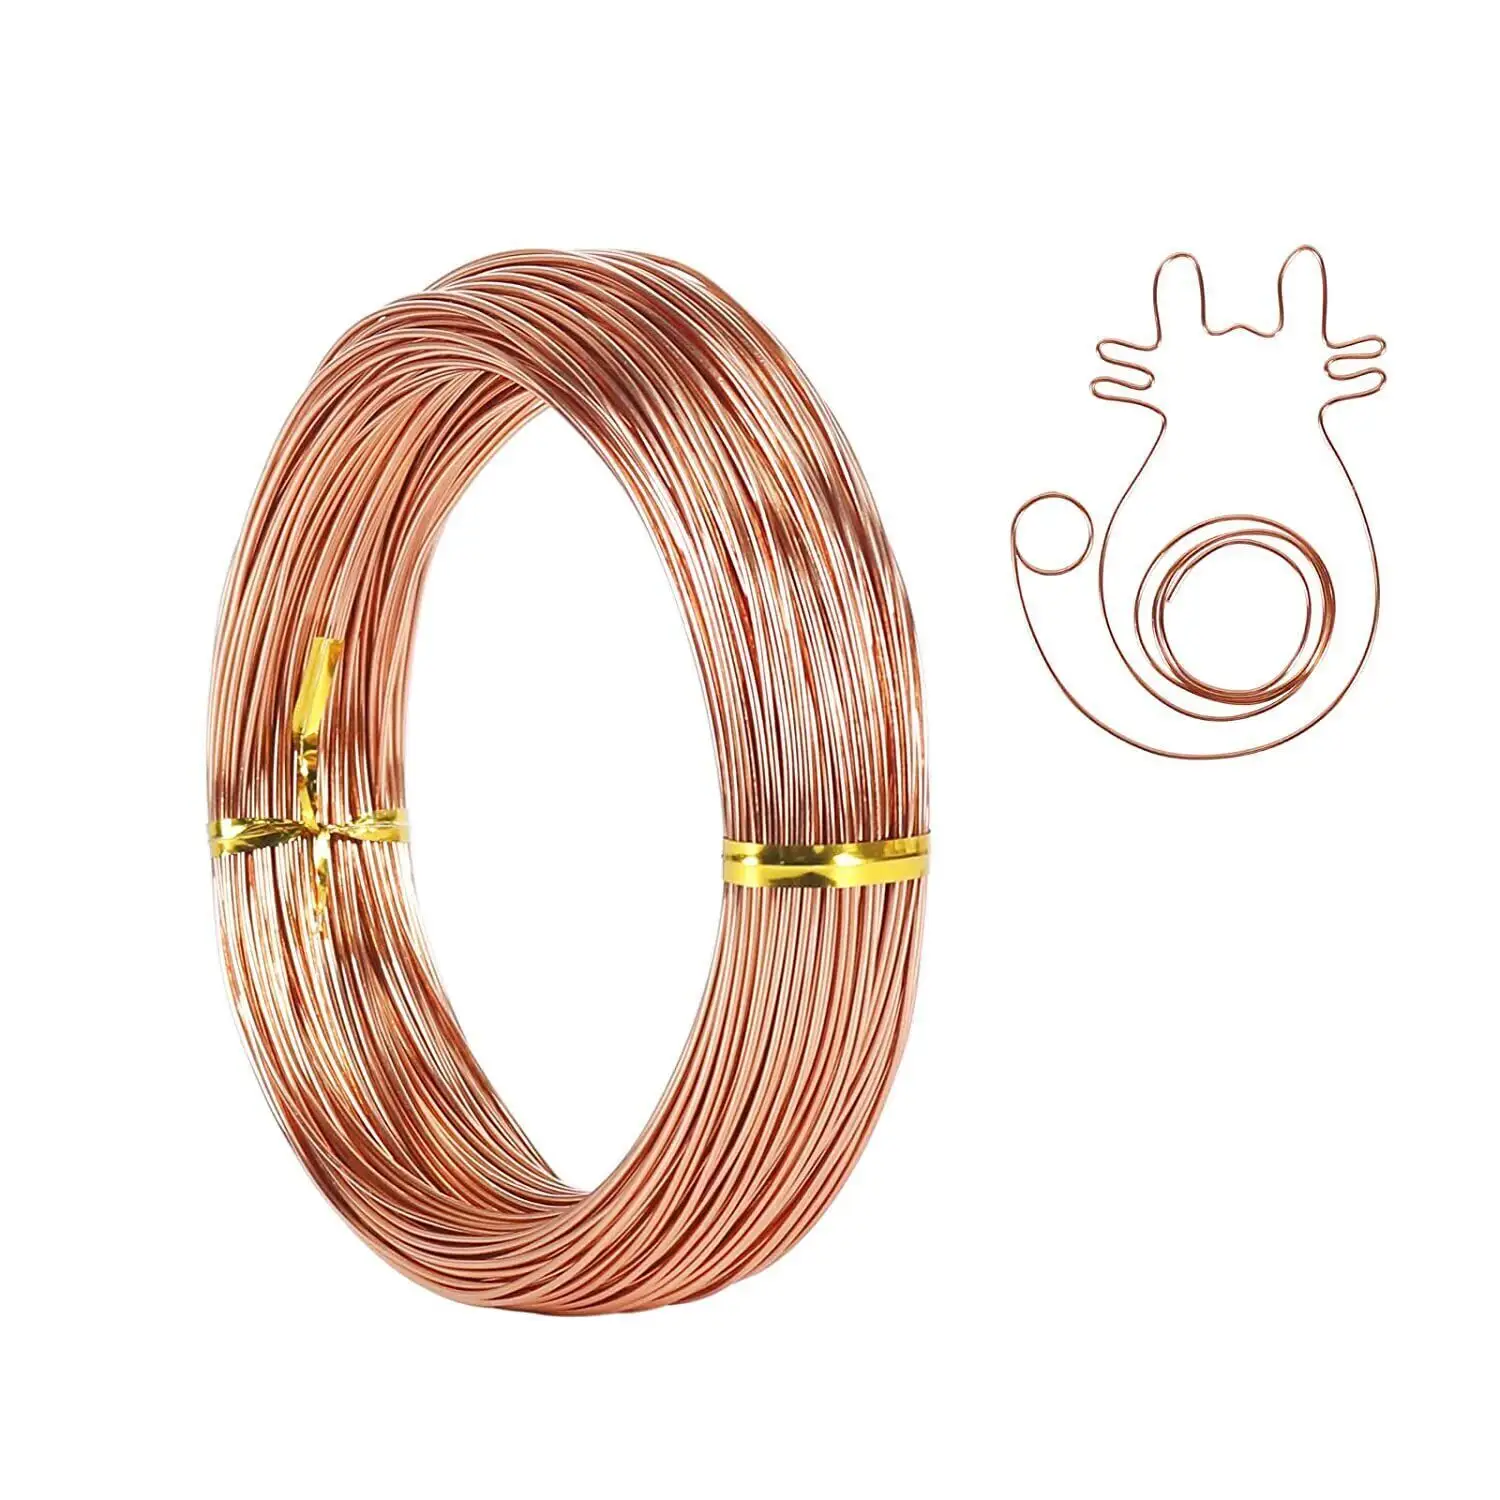 Bobine de câble non revêtue de fil de cuivre nu pur 1mm 1.5mm bijoux artisanat bonsaï fil de cuivre pur câble non revêtu nu